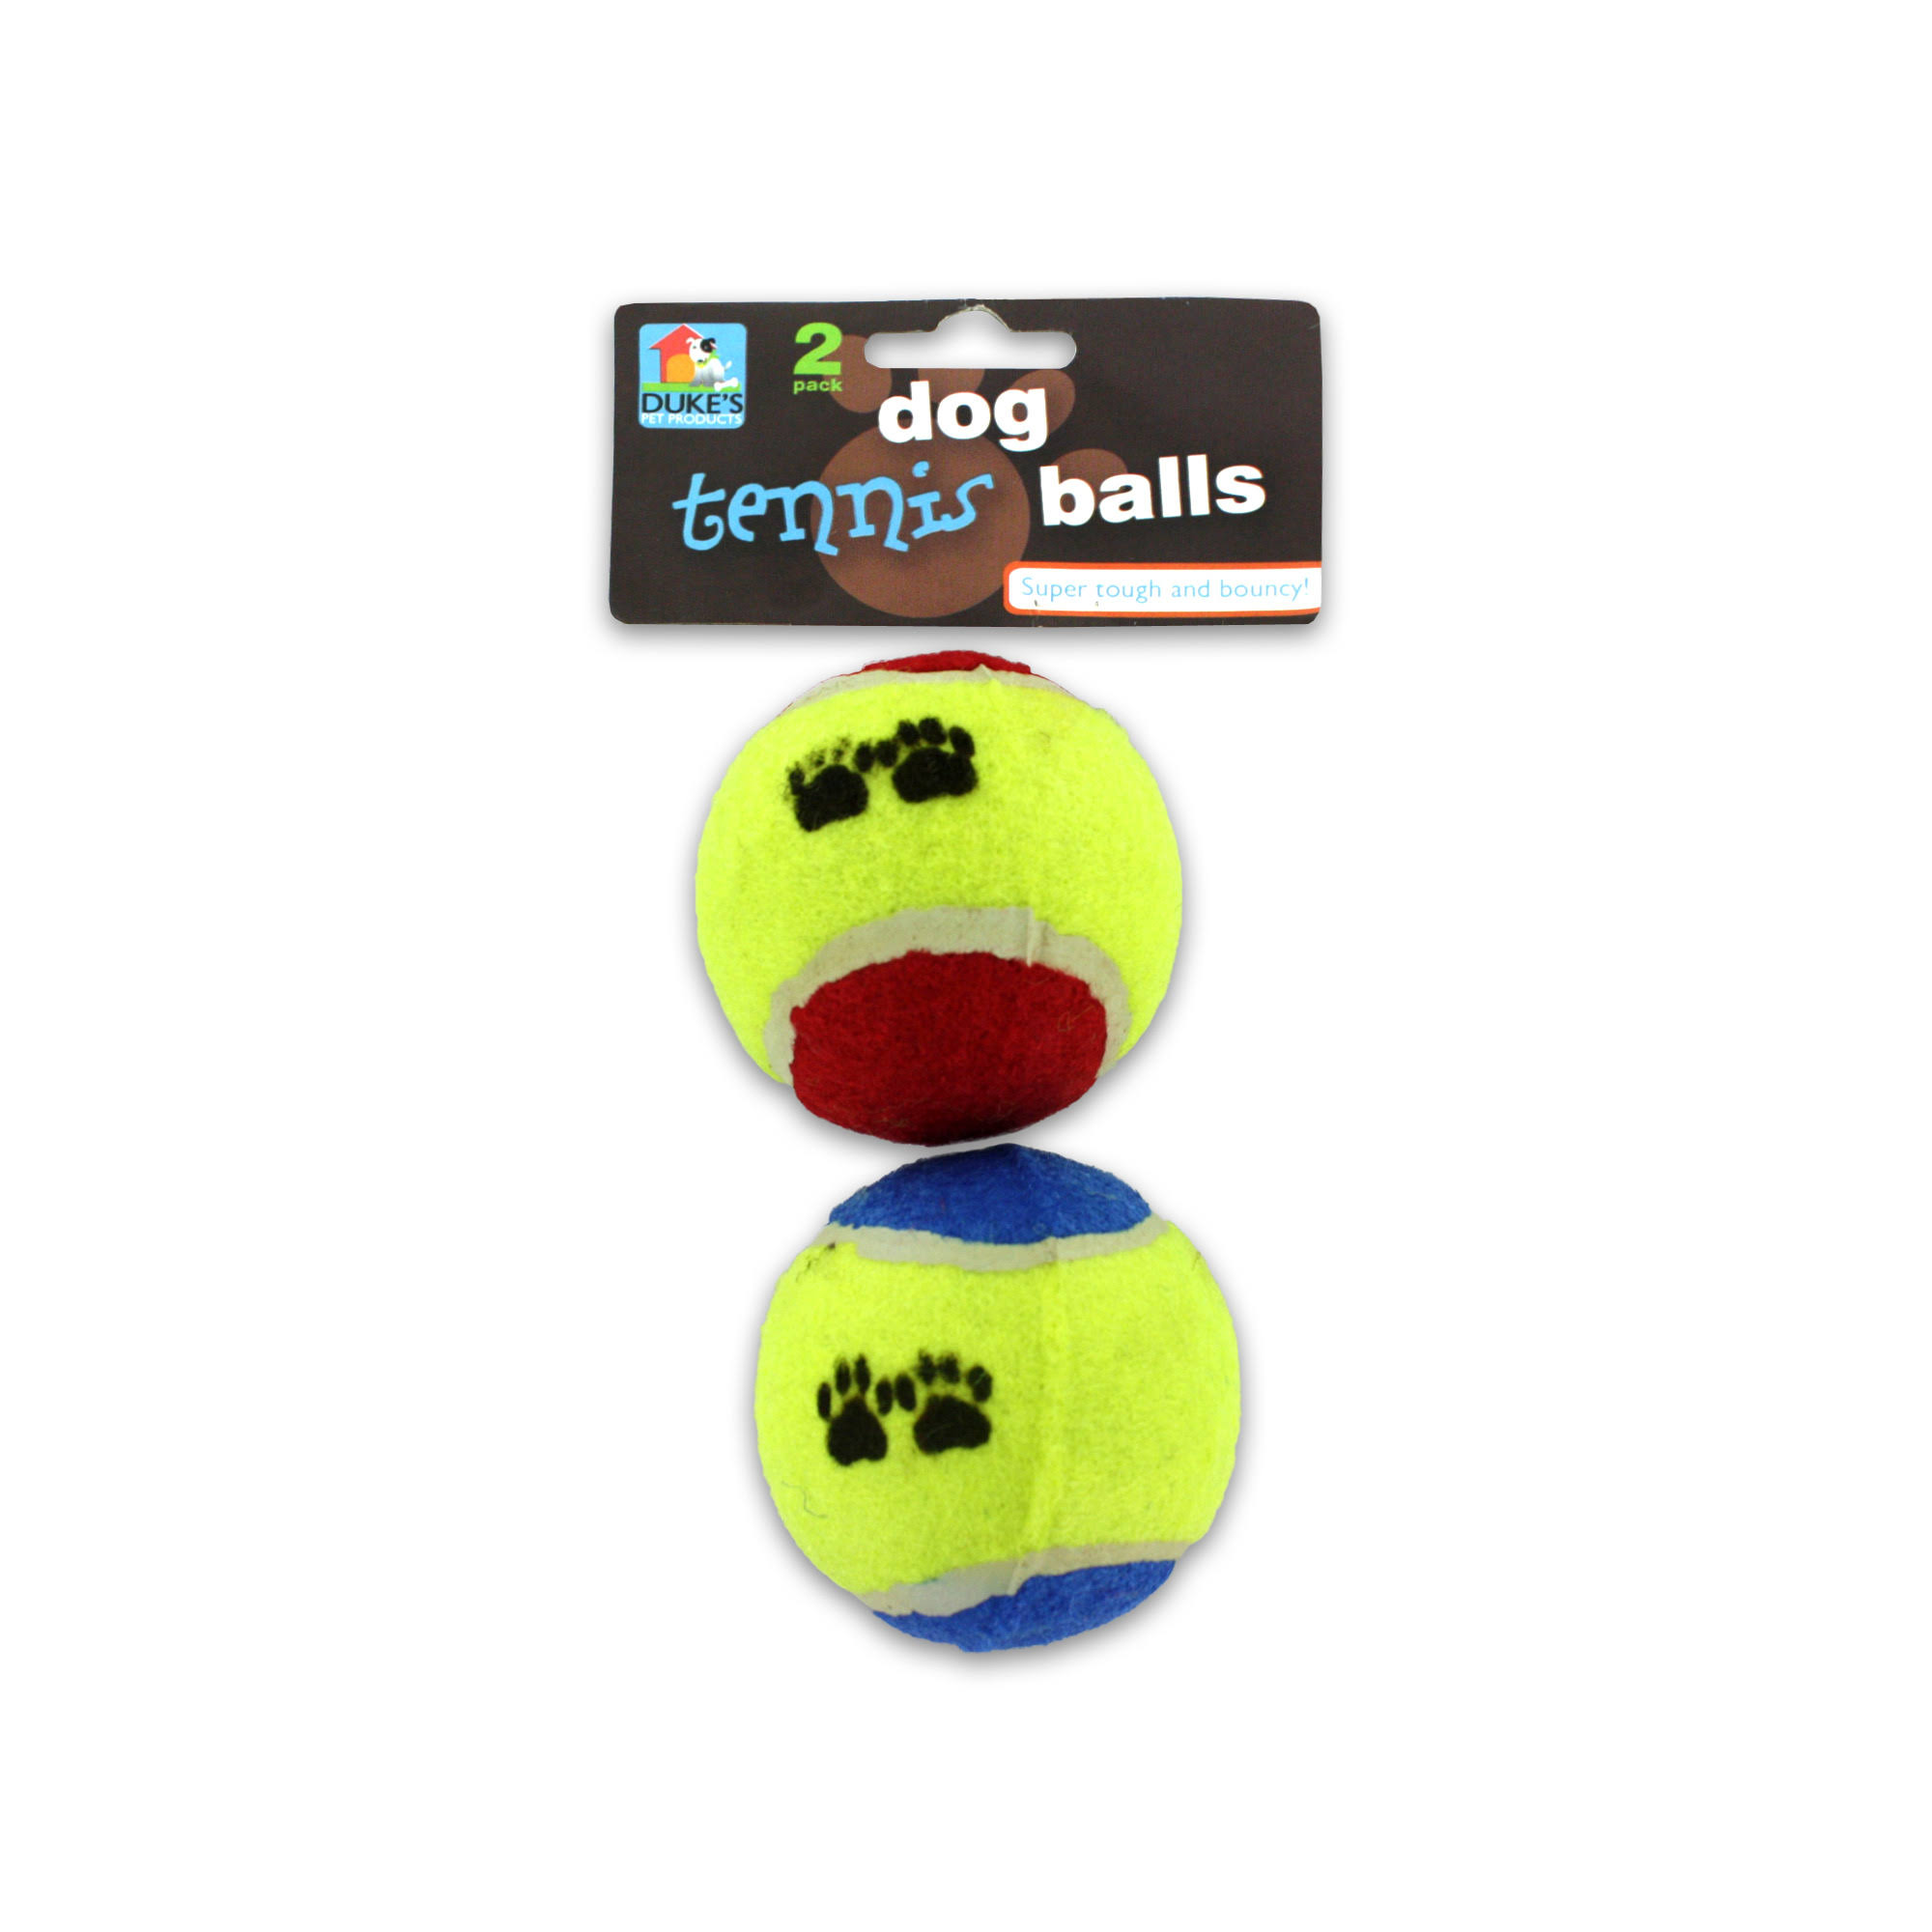 Duke's Dog Tennis Balls - 2 Balls